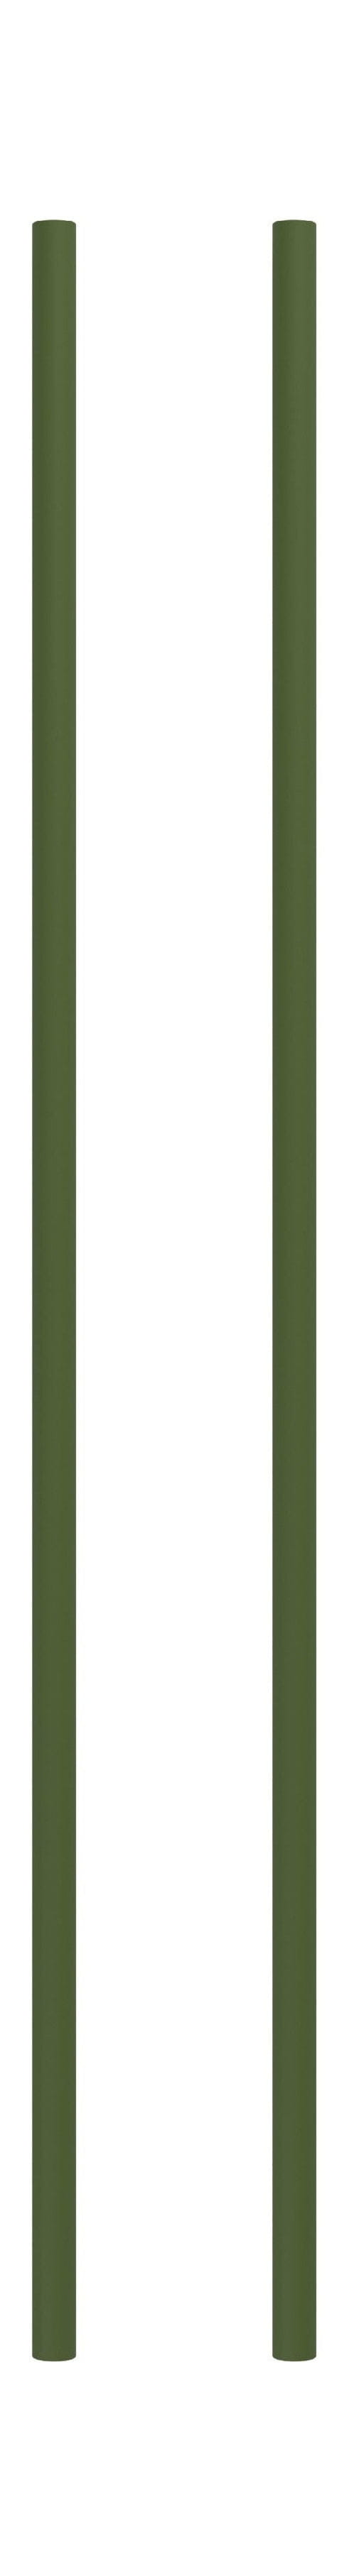 MOEBE Scaffali di scaffalatura/Gamba per scaffalature da parete 85 cm Pine verde, set di 2